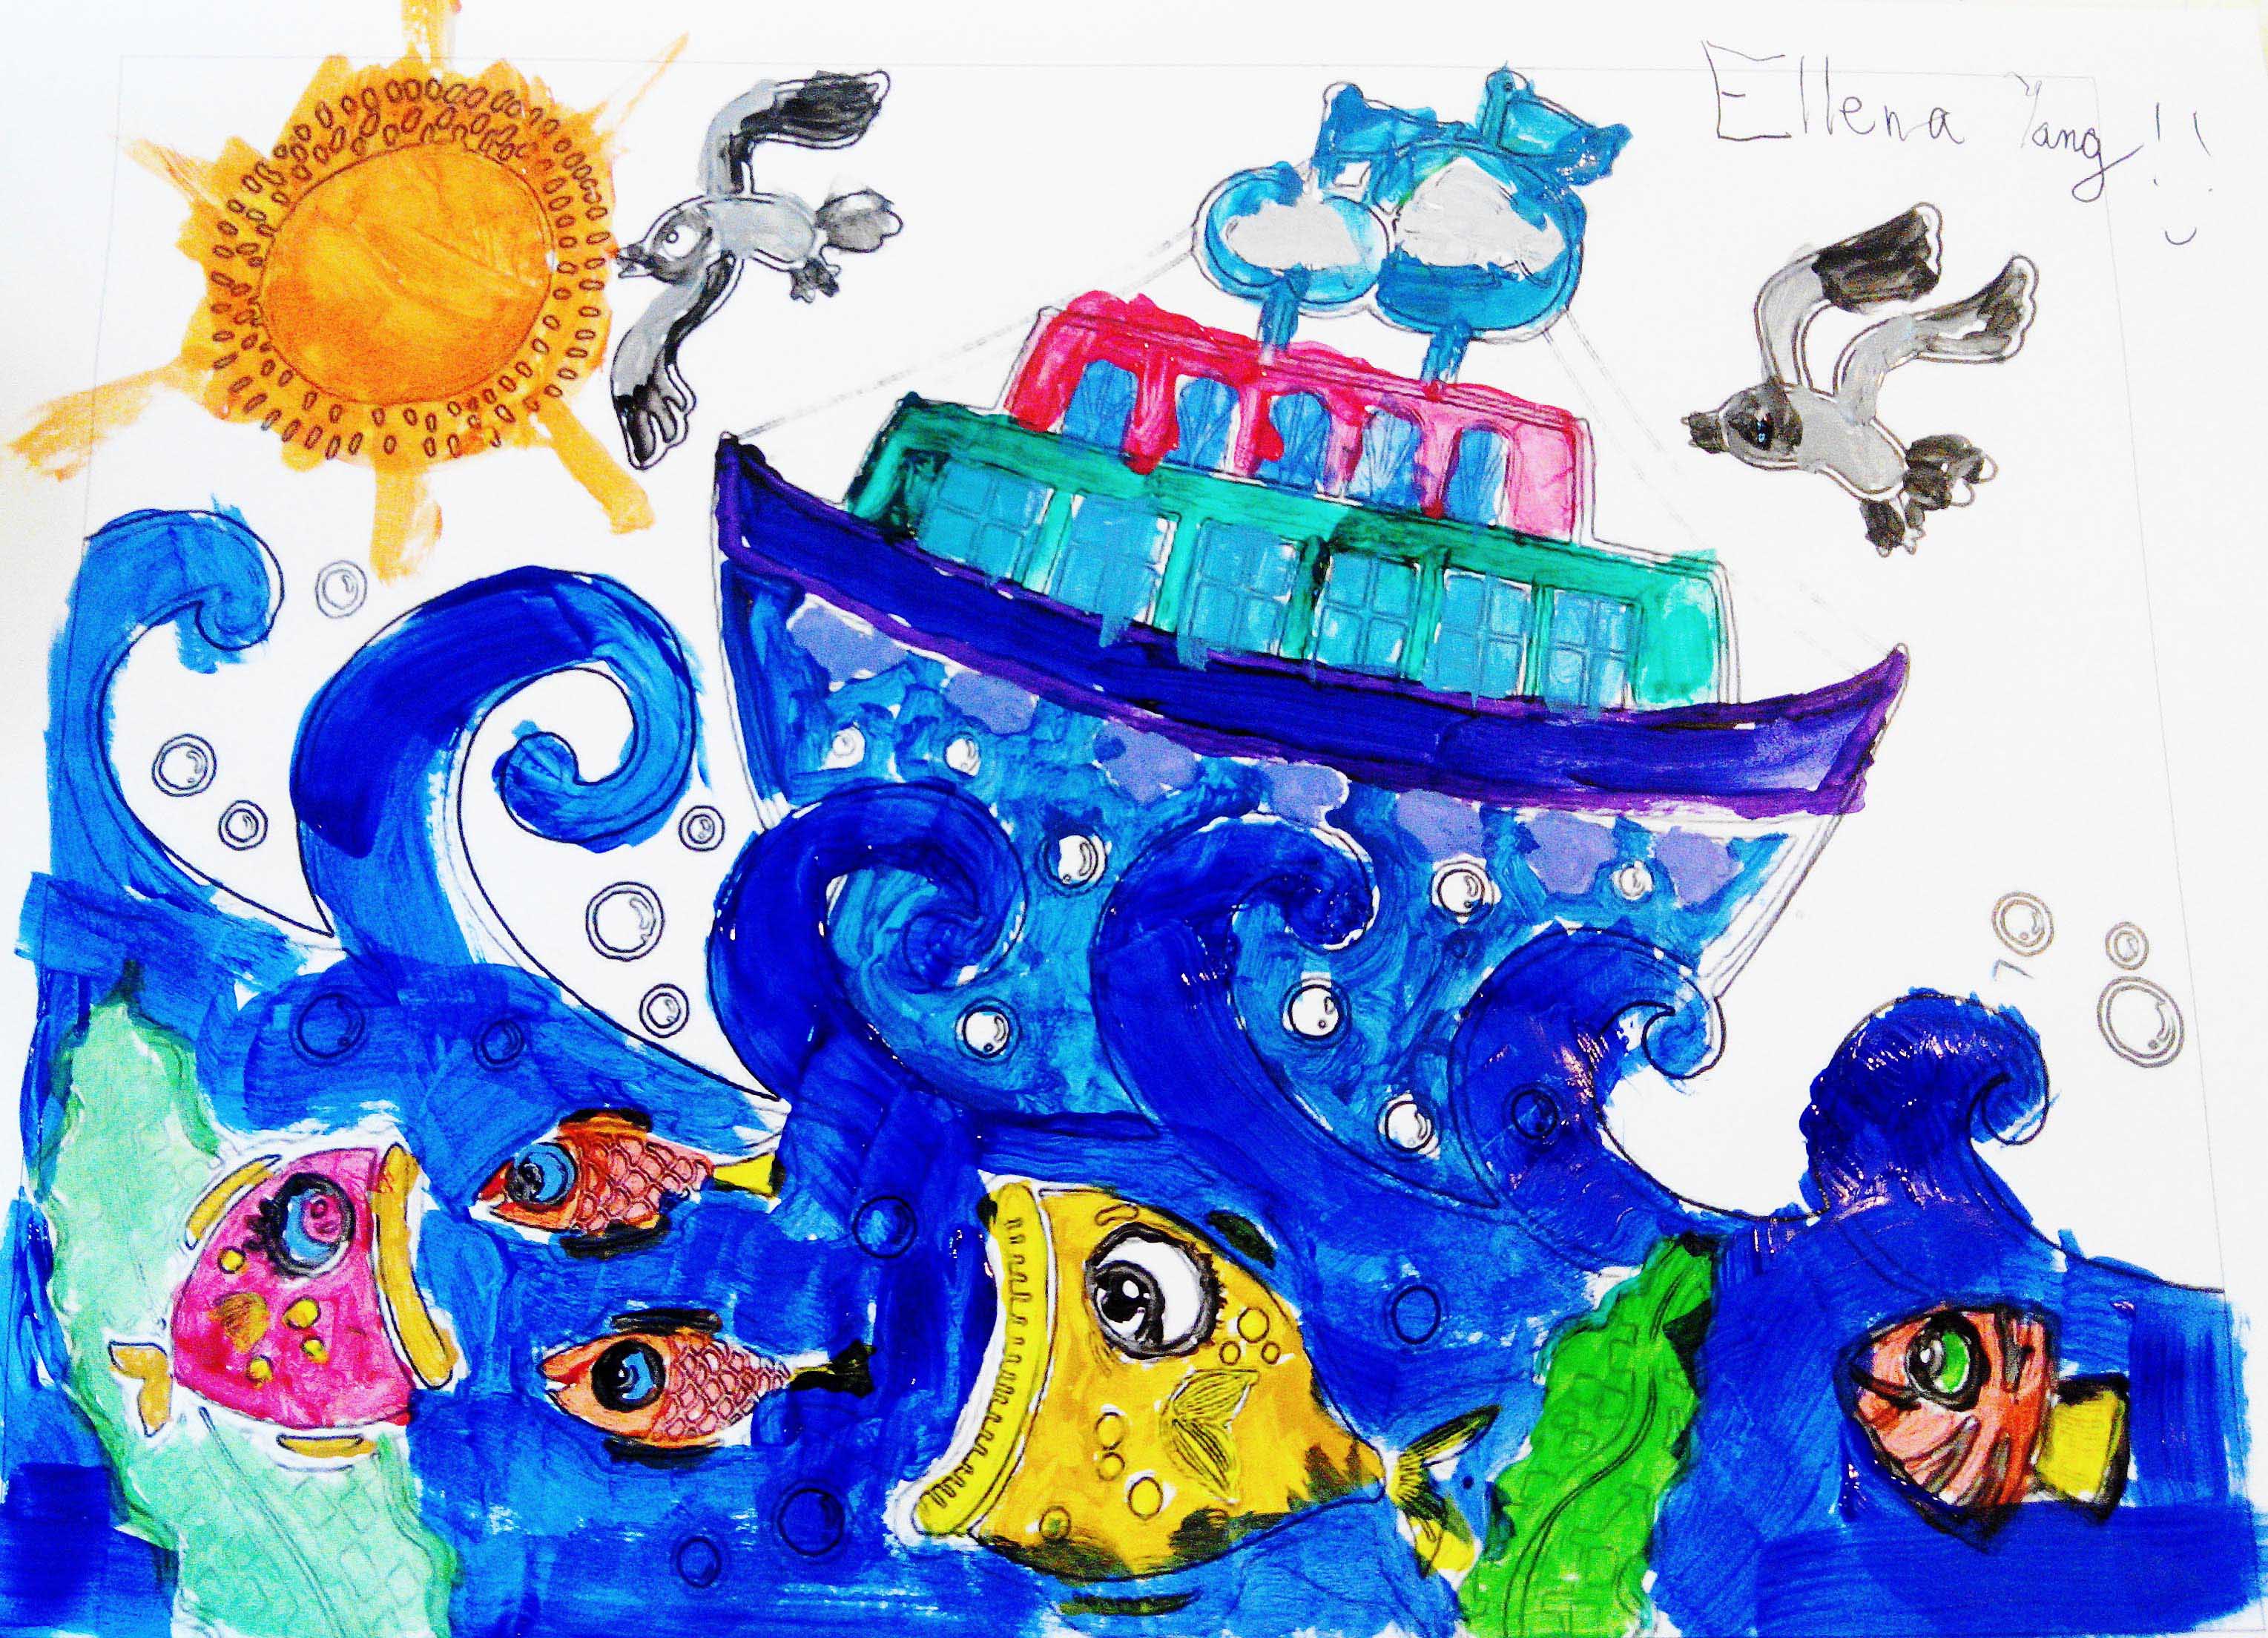 Ellena Yang, 7岁，配色练习，2014年绘画启蒙课堂作品，初学几个月